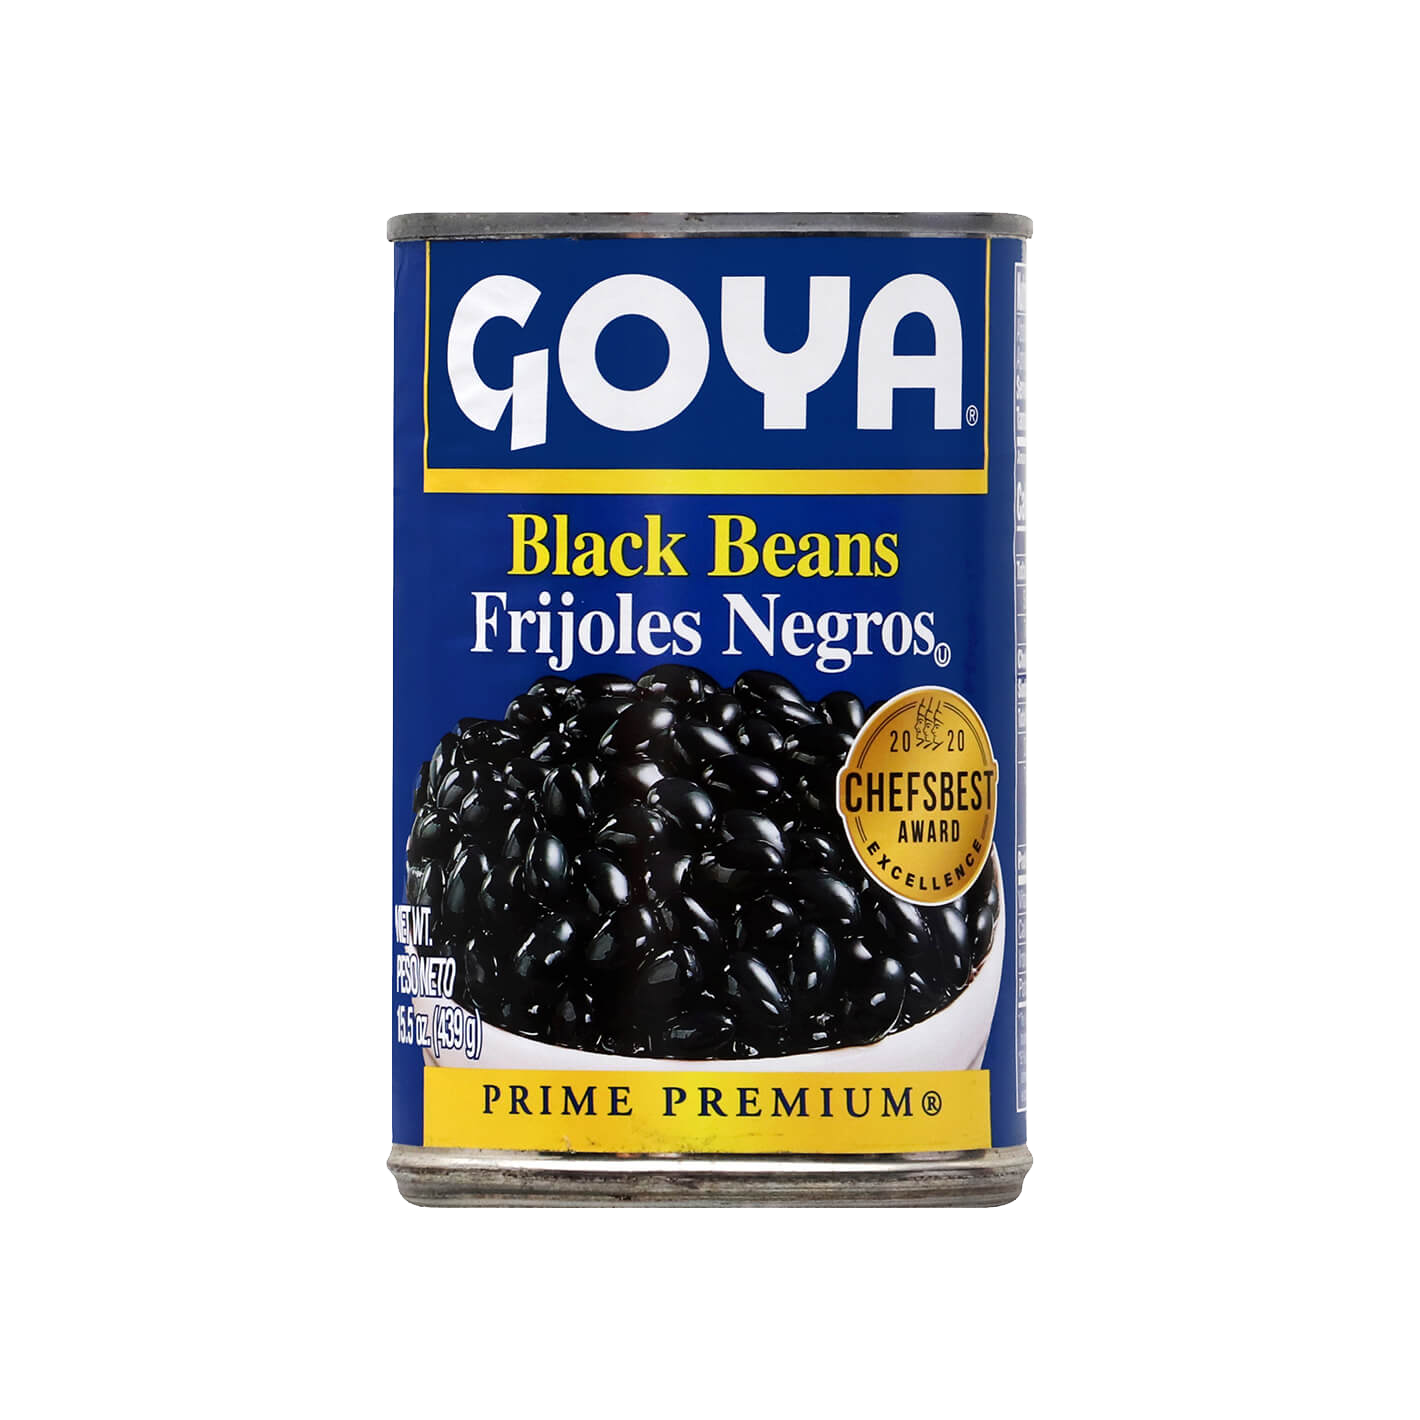 Goya Black Beans – Shop Goya